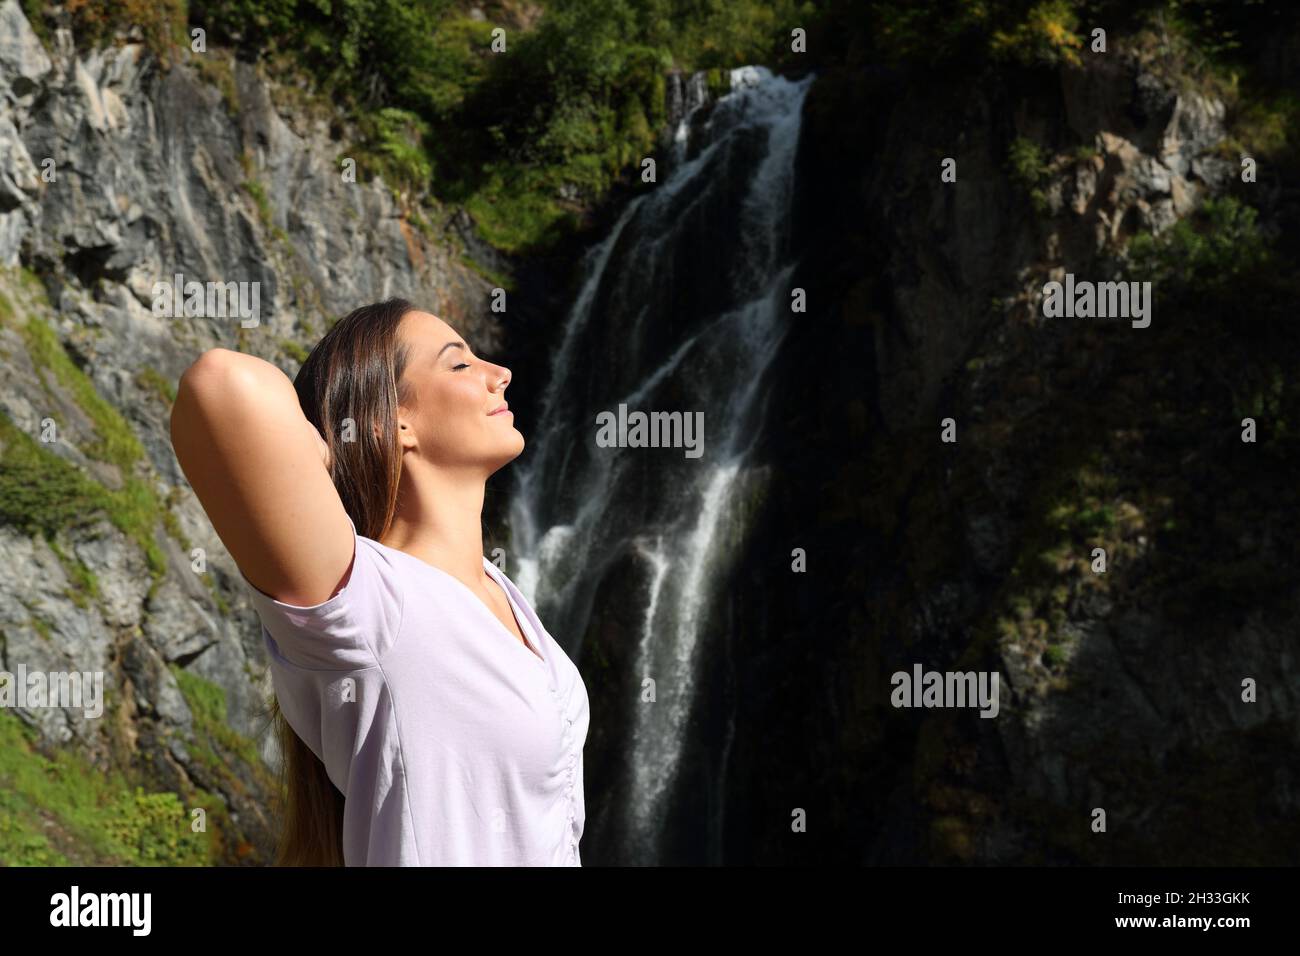 Seitenansicht Porträt einer glücklichen, entspannten Frau, die frische Luft atmet und in einem Wasserfall ruht Stockfoto